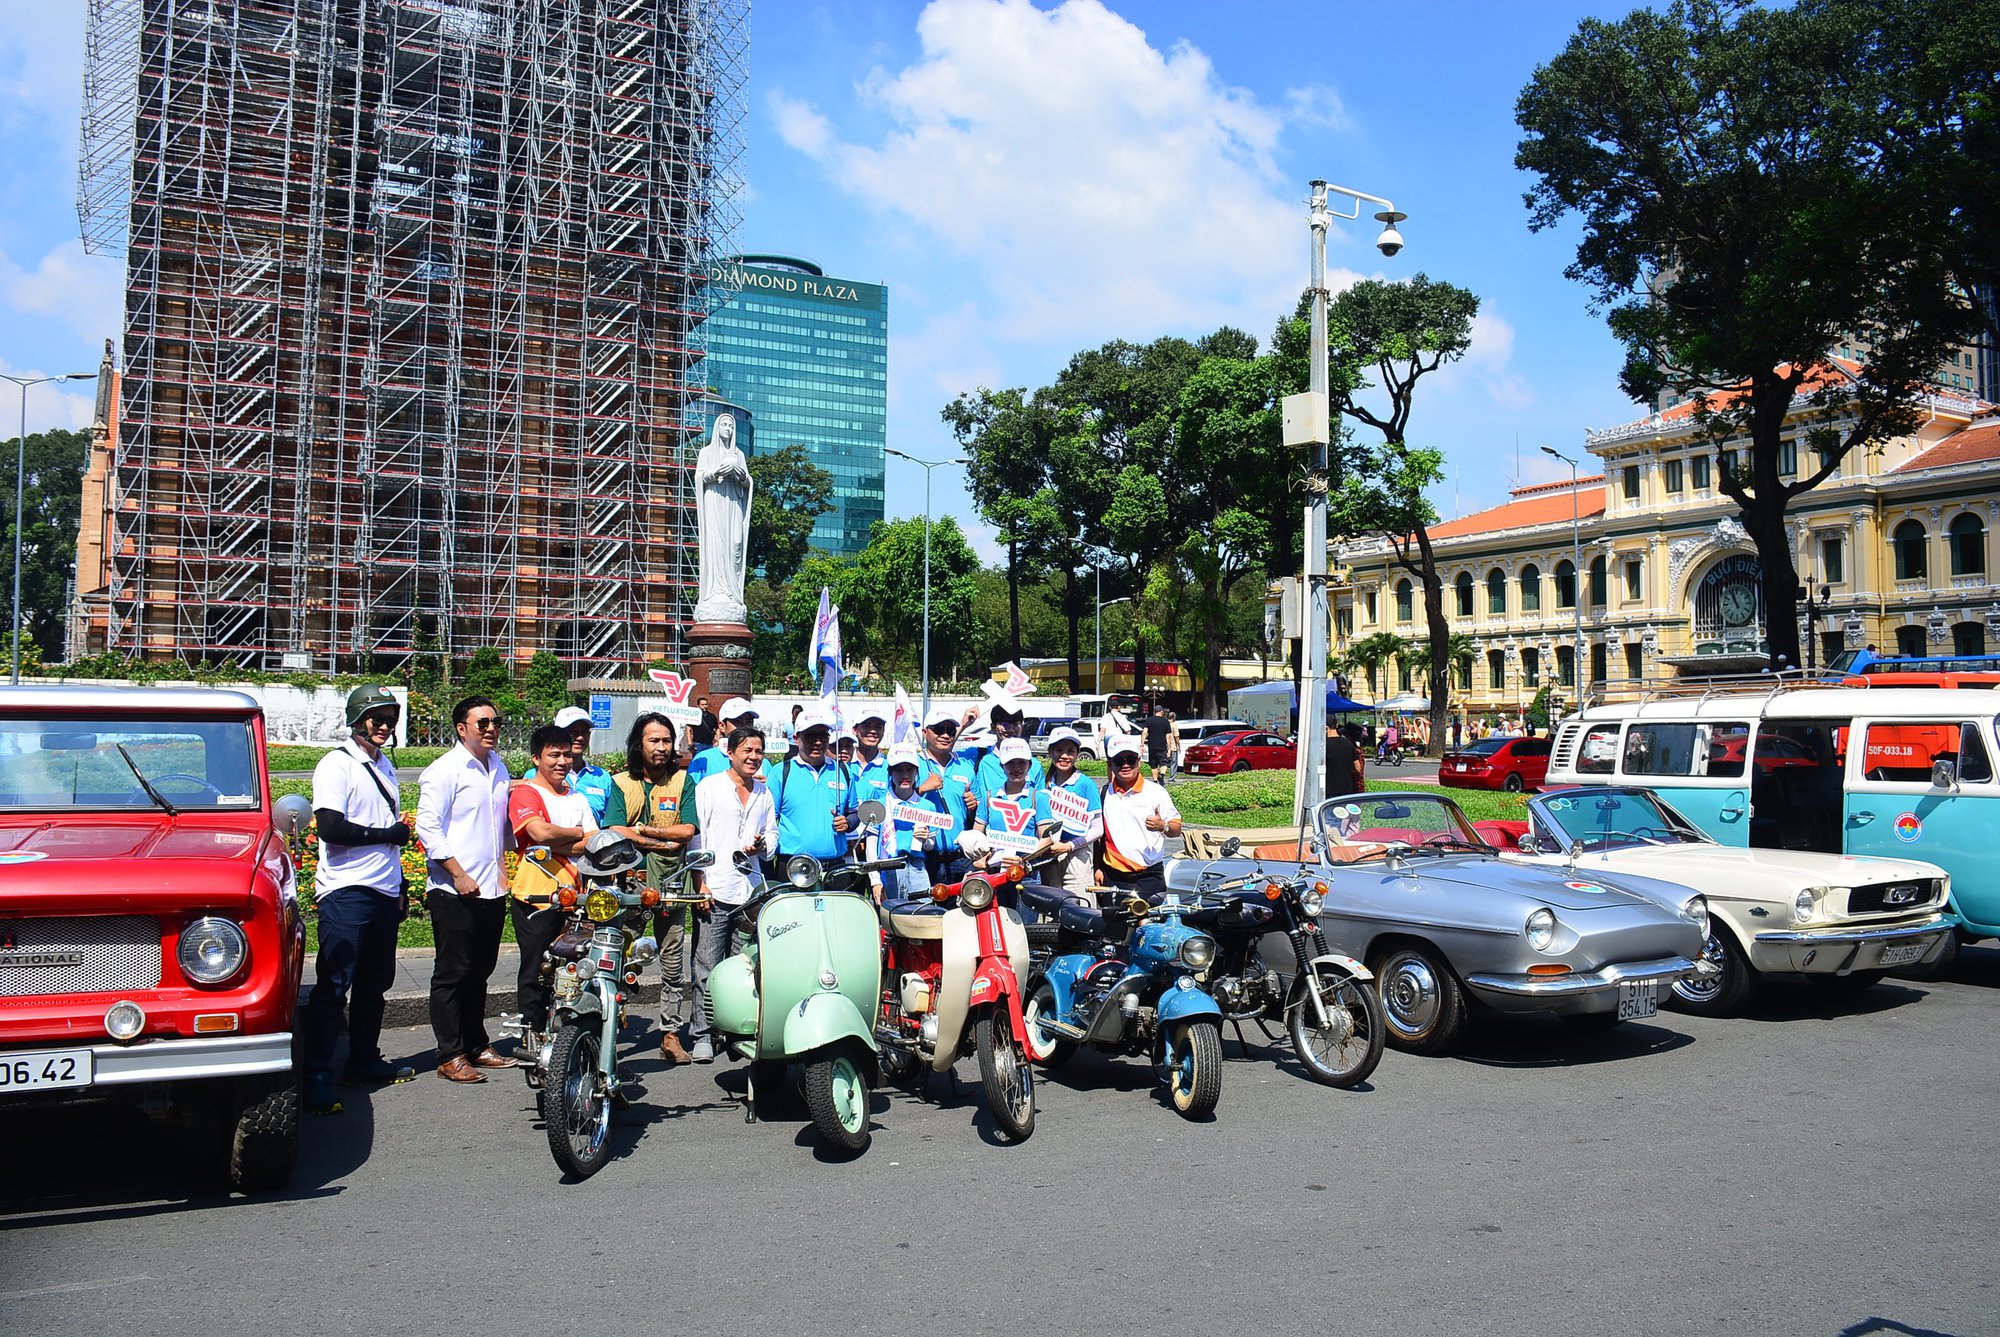 Độc, lạ ngồi xe cổ diễu hành ngắm những cung đường du lịch TP HCM - Ảnh 2.